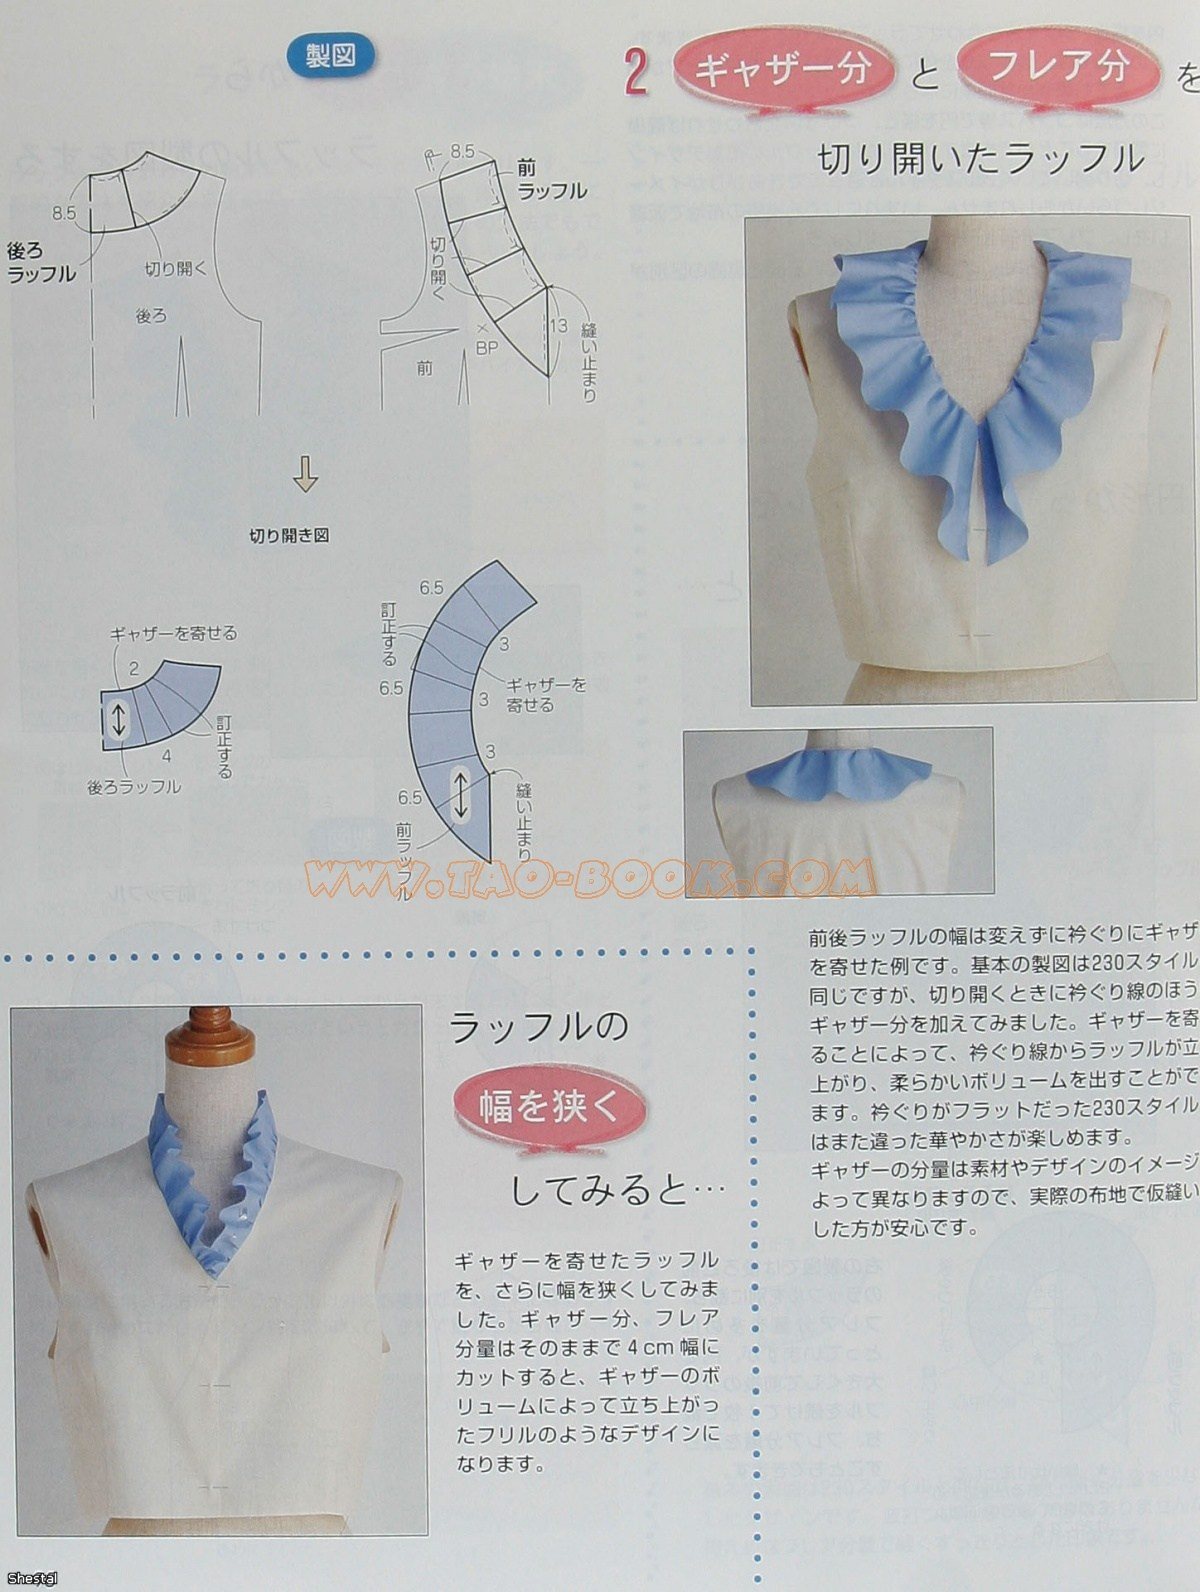 Блузка с рукавом фонарик: варианты построения выкроек, модель блузки из шитья